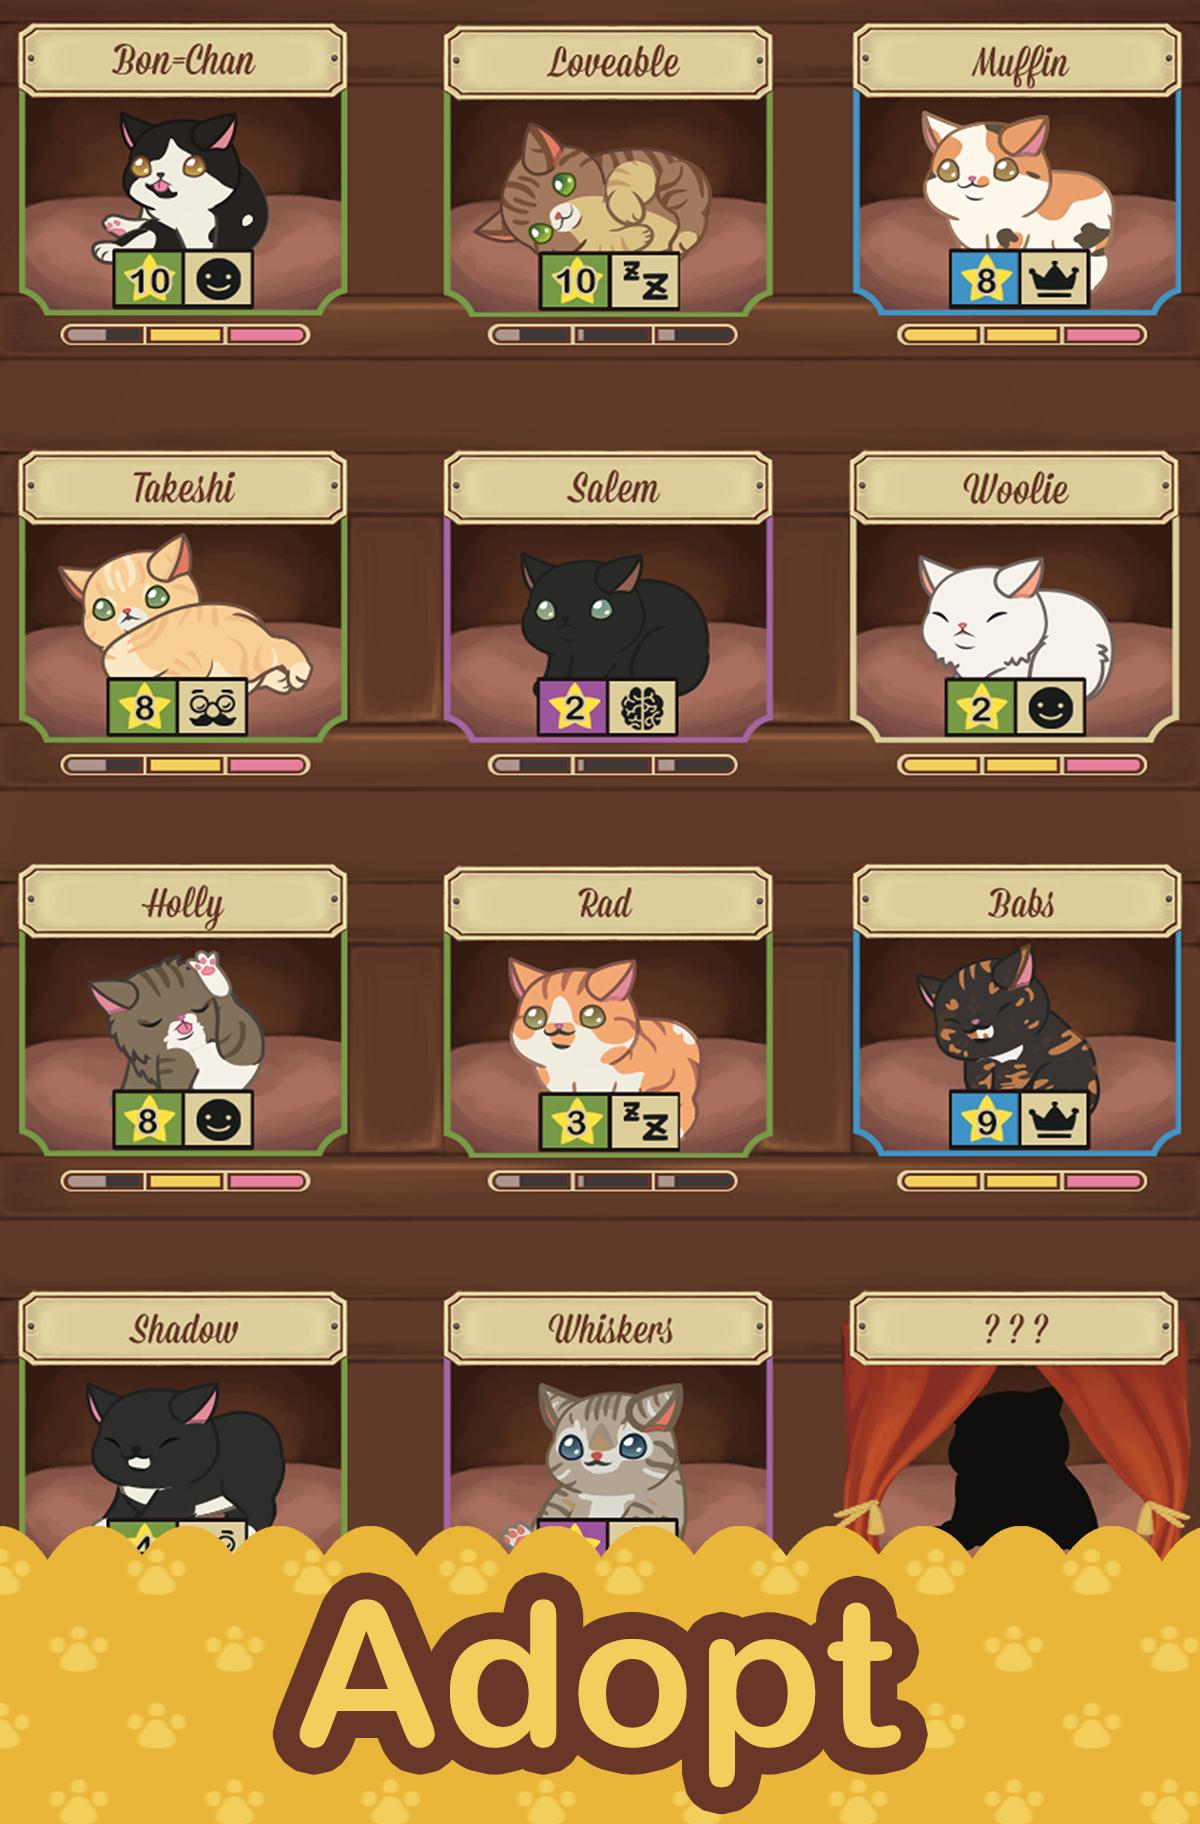 Игра для кошек котов кошки